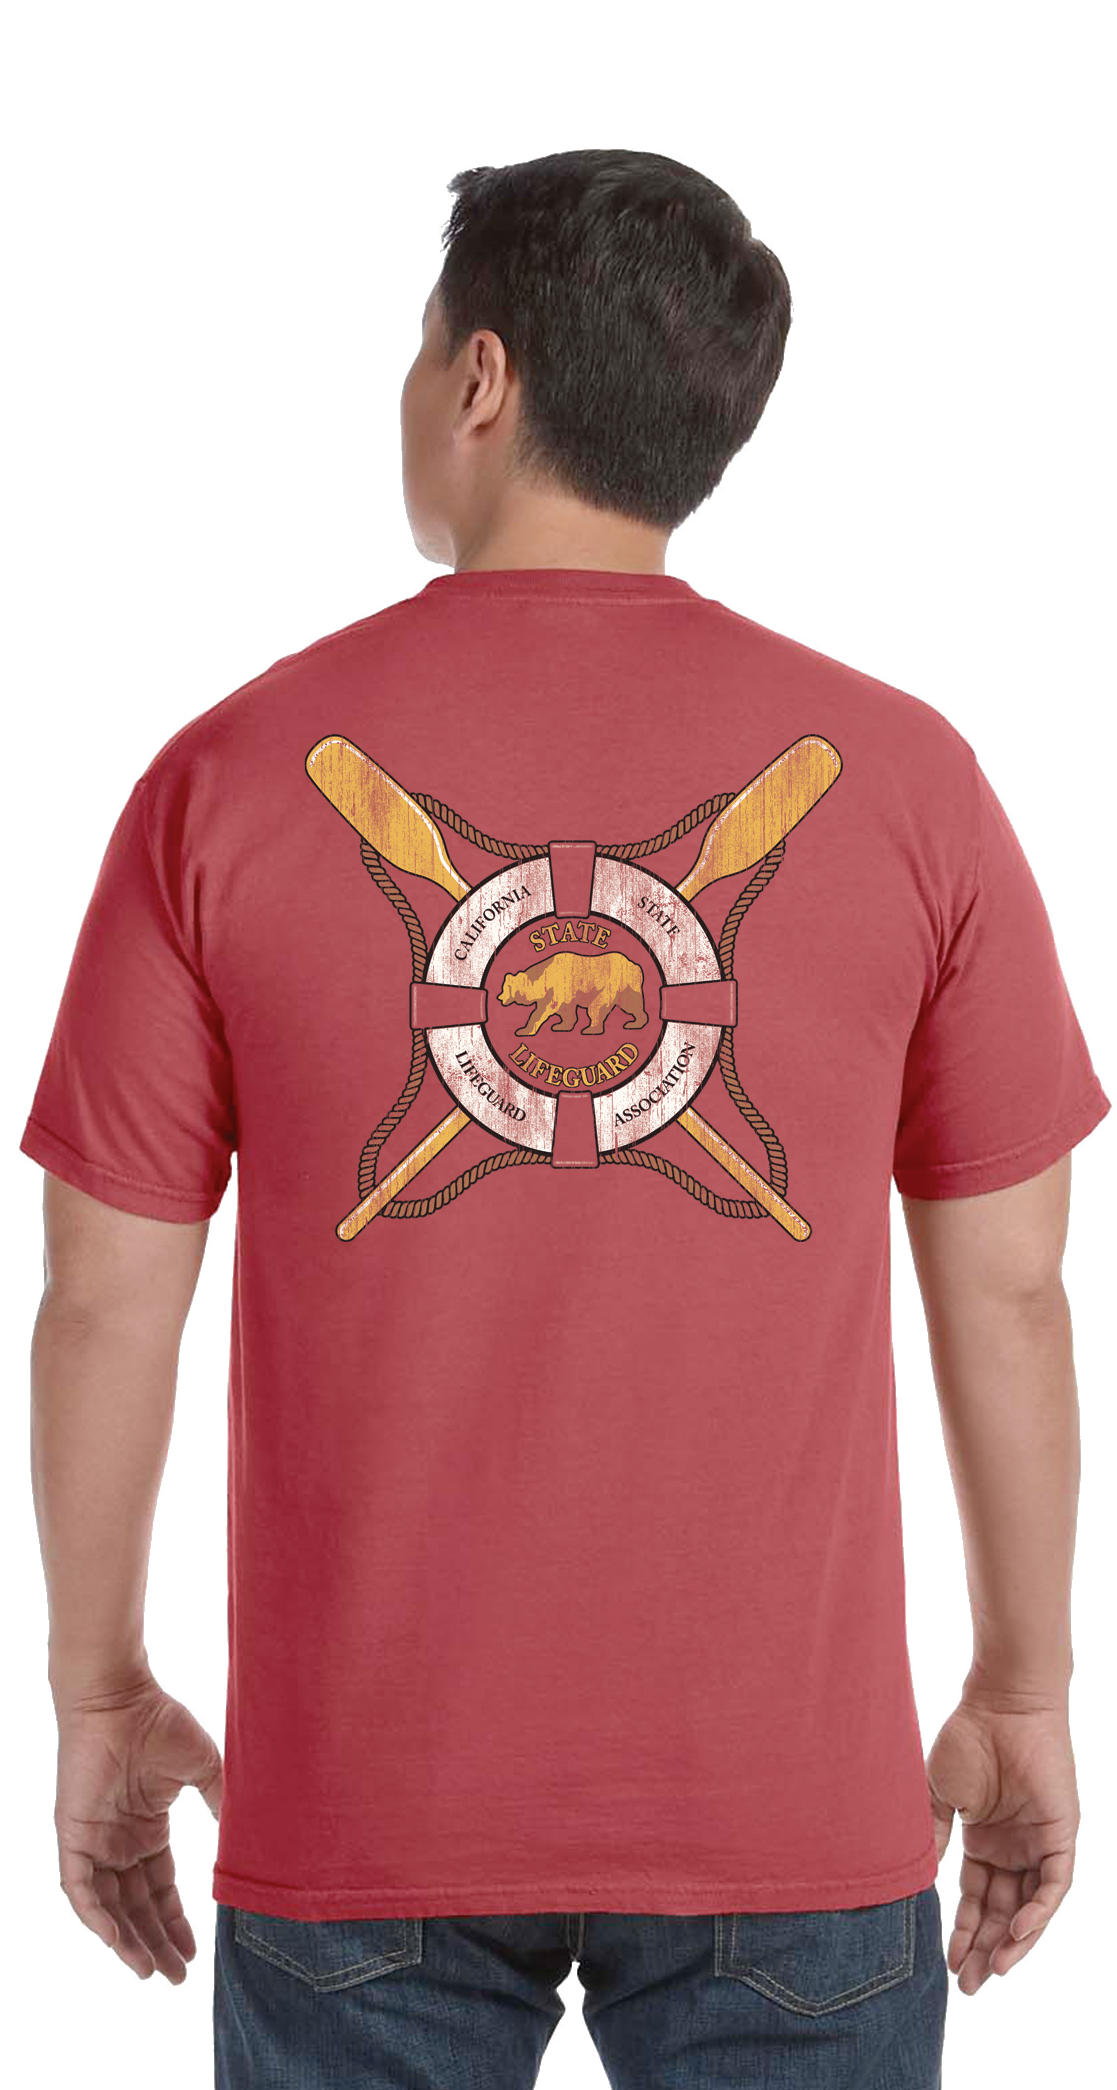 California Lifeguard Association T-Shirt